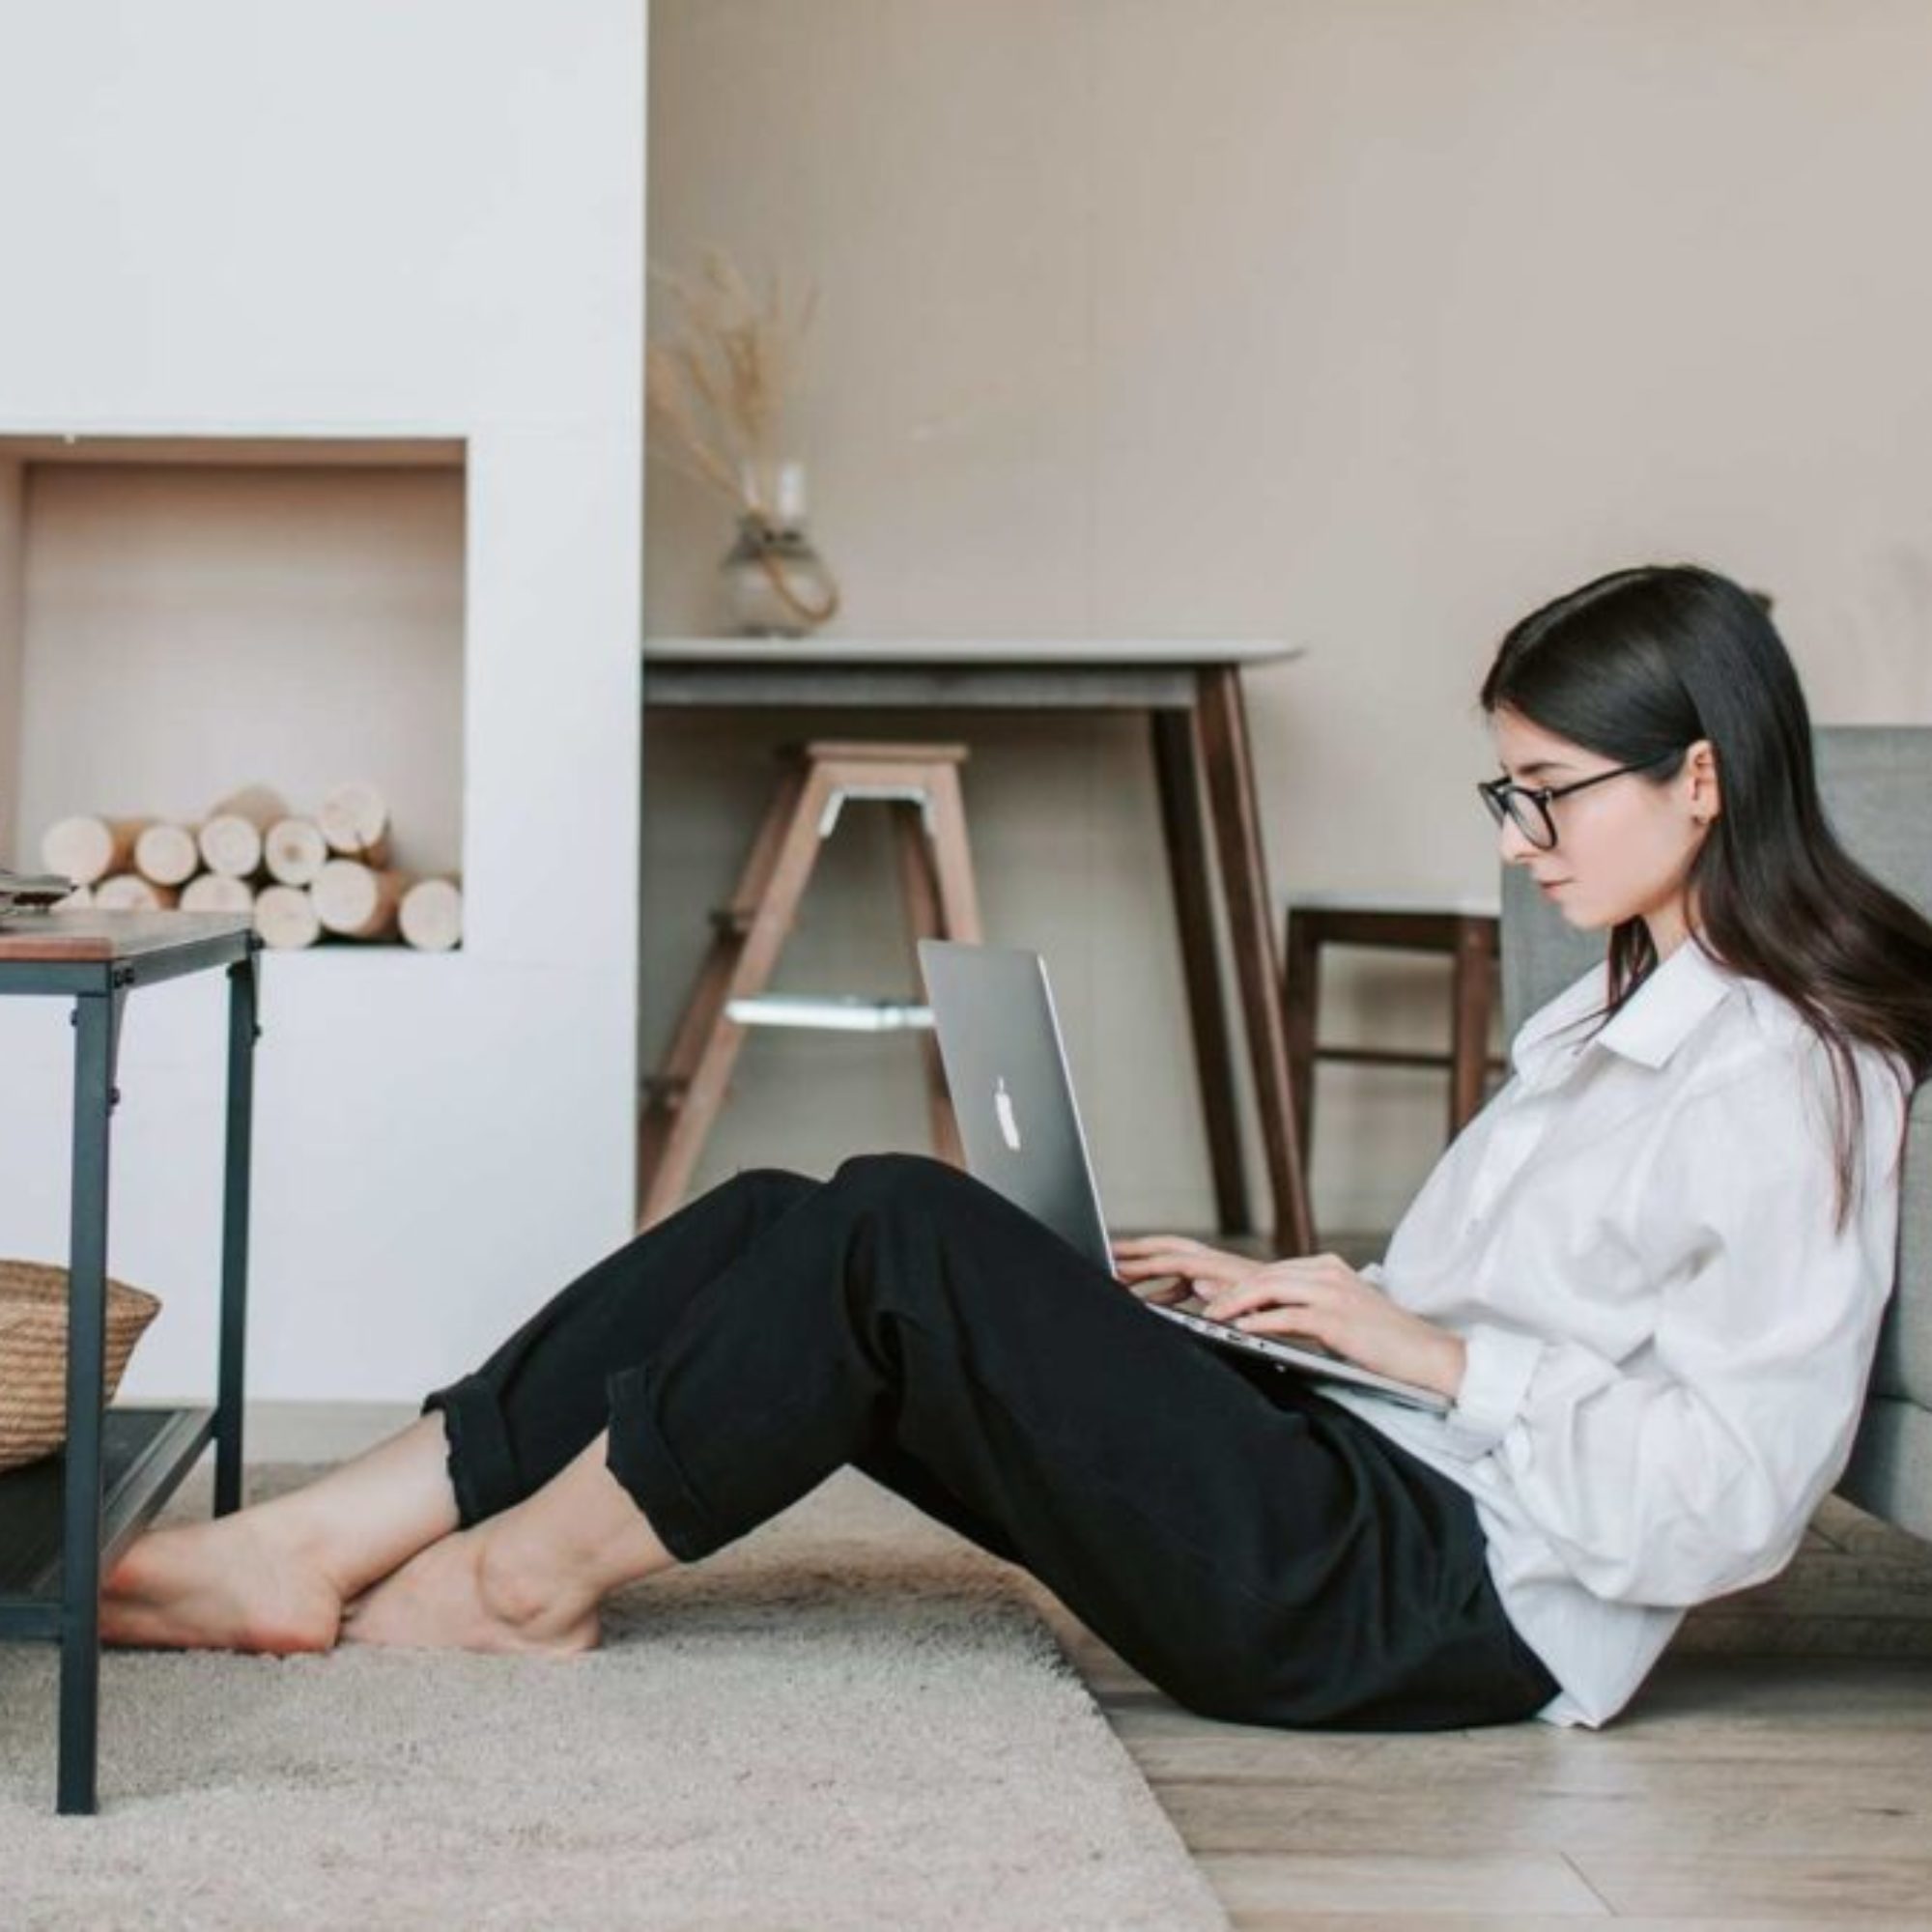 5 goda råd om ergonomi på jobbet och i hemmakontoret